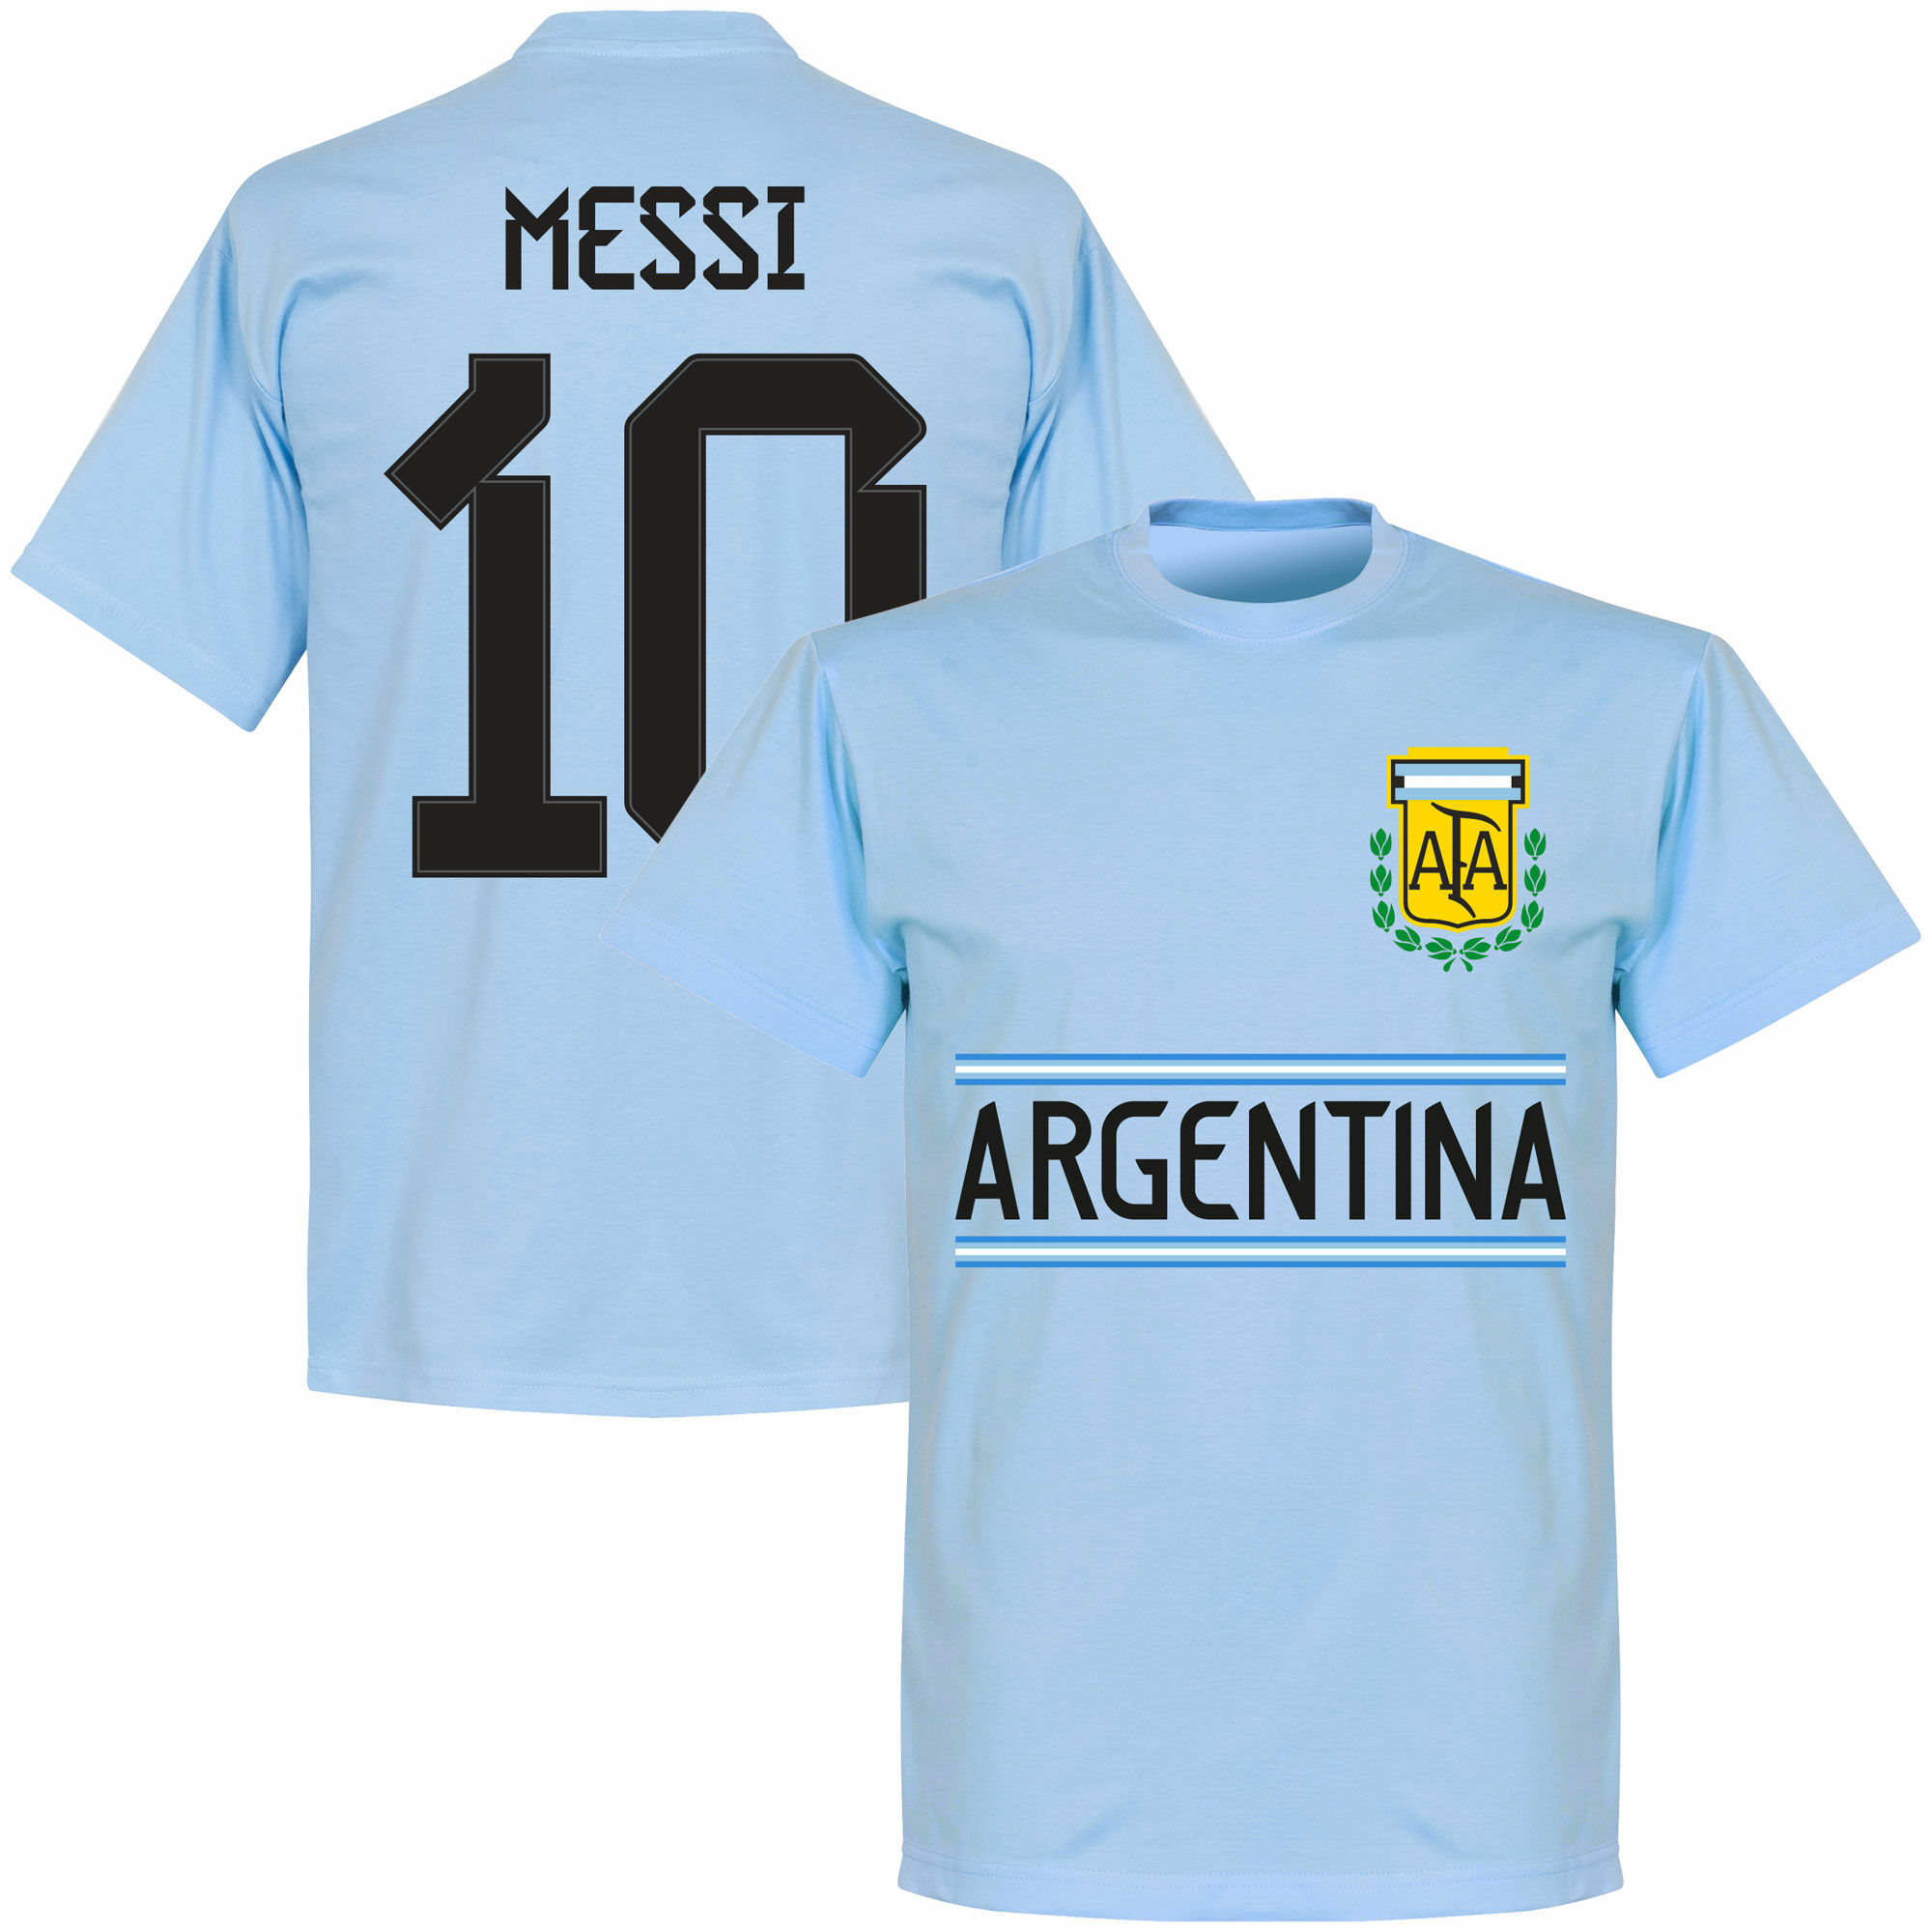 Argentina - Tričko - číslo 10, modré, Lionel Messi